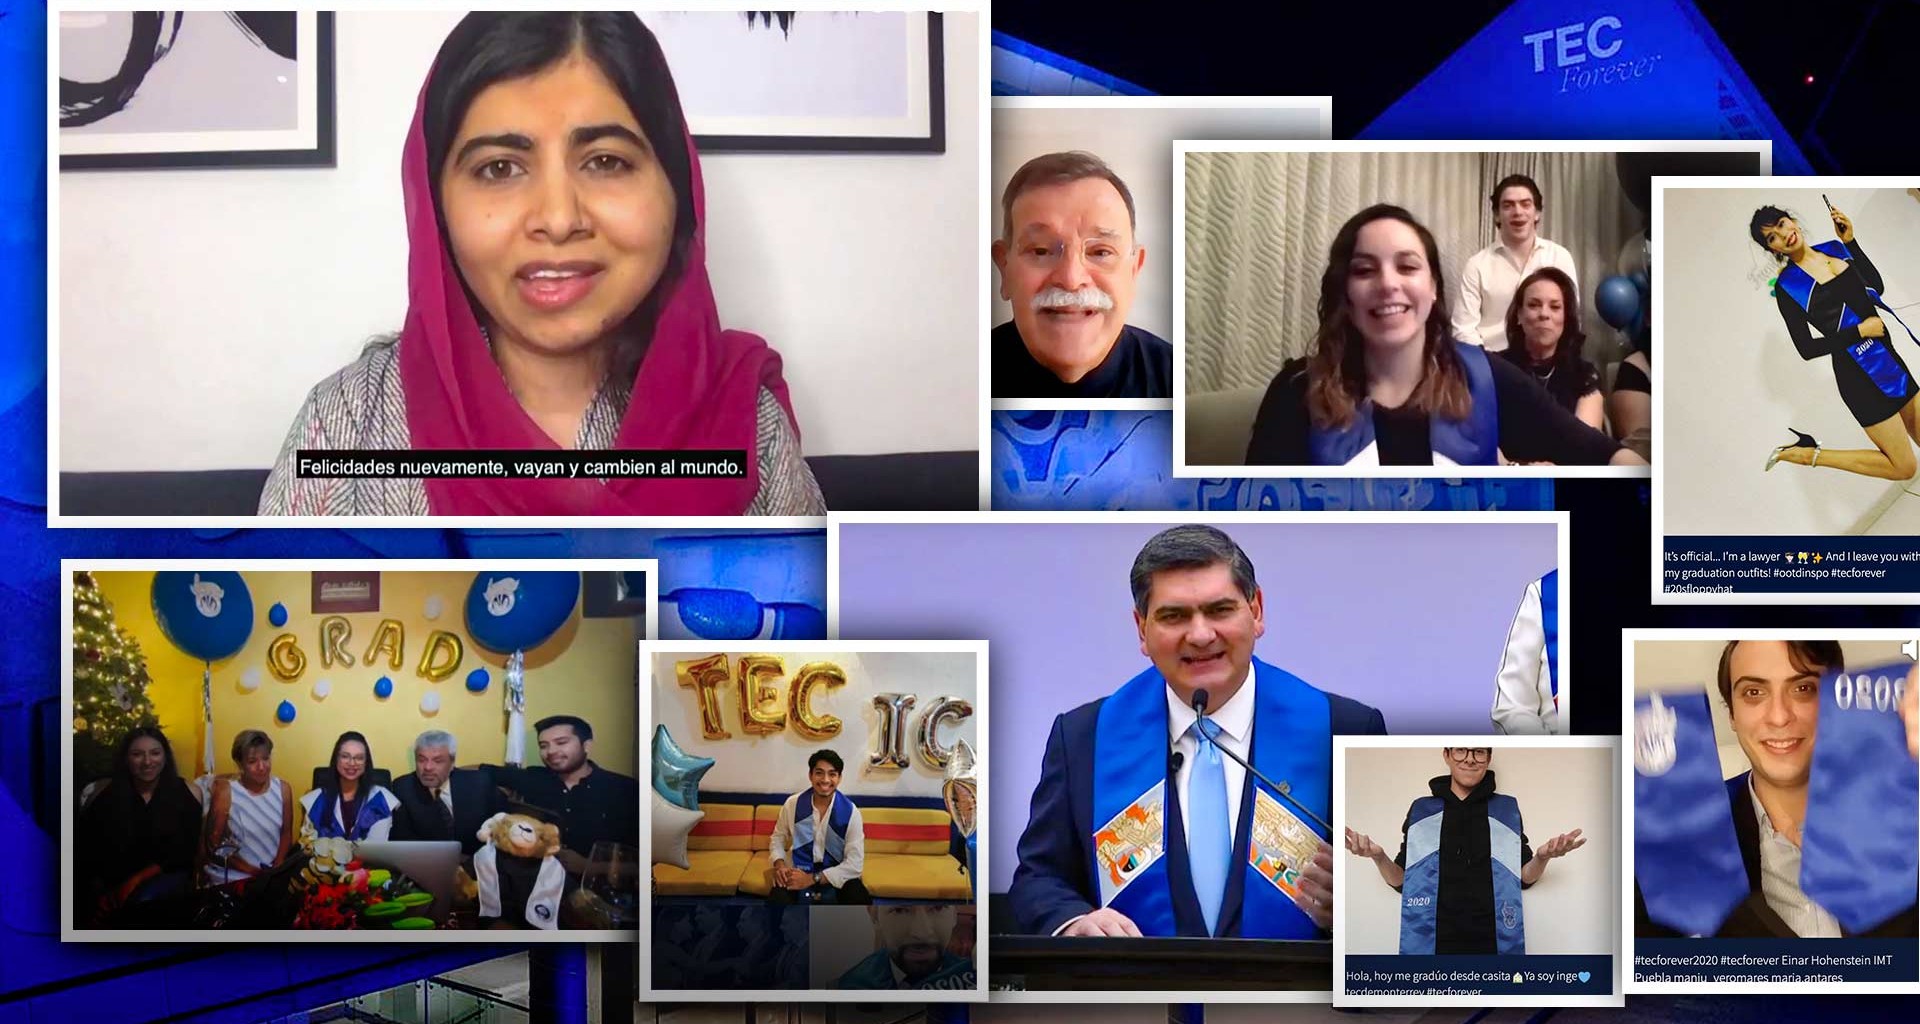 Compromiso y respeto a mujeres: el mensaje de Malala a graduados Tec